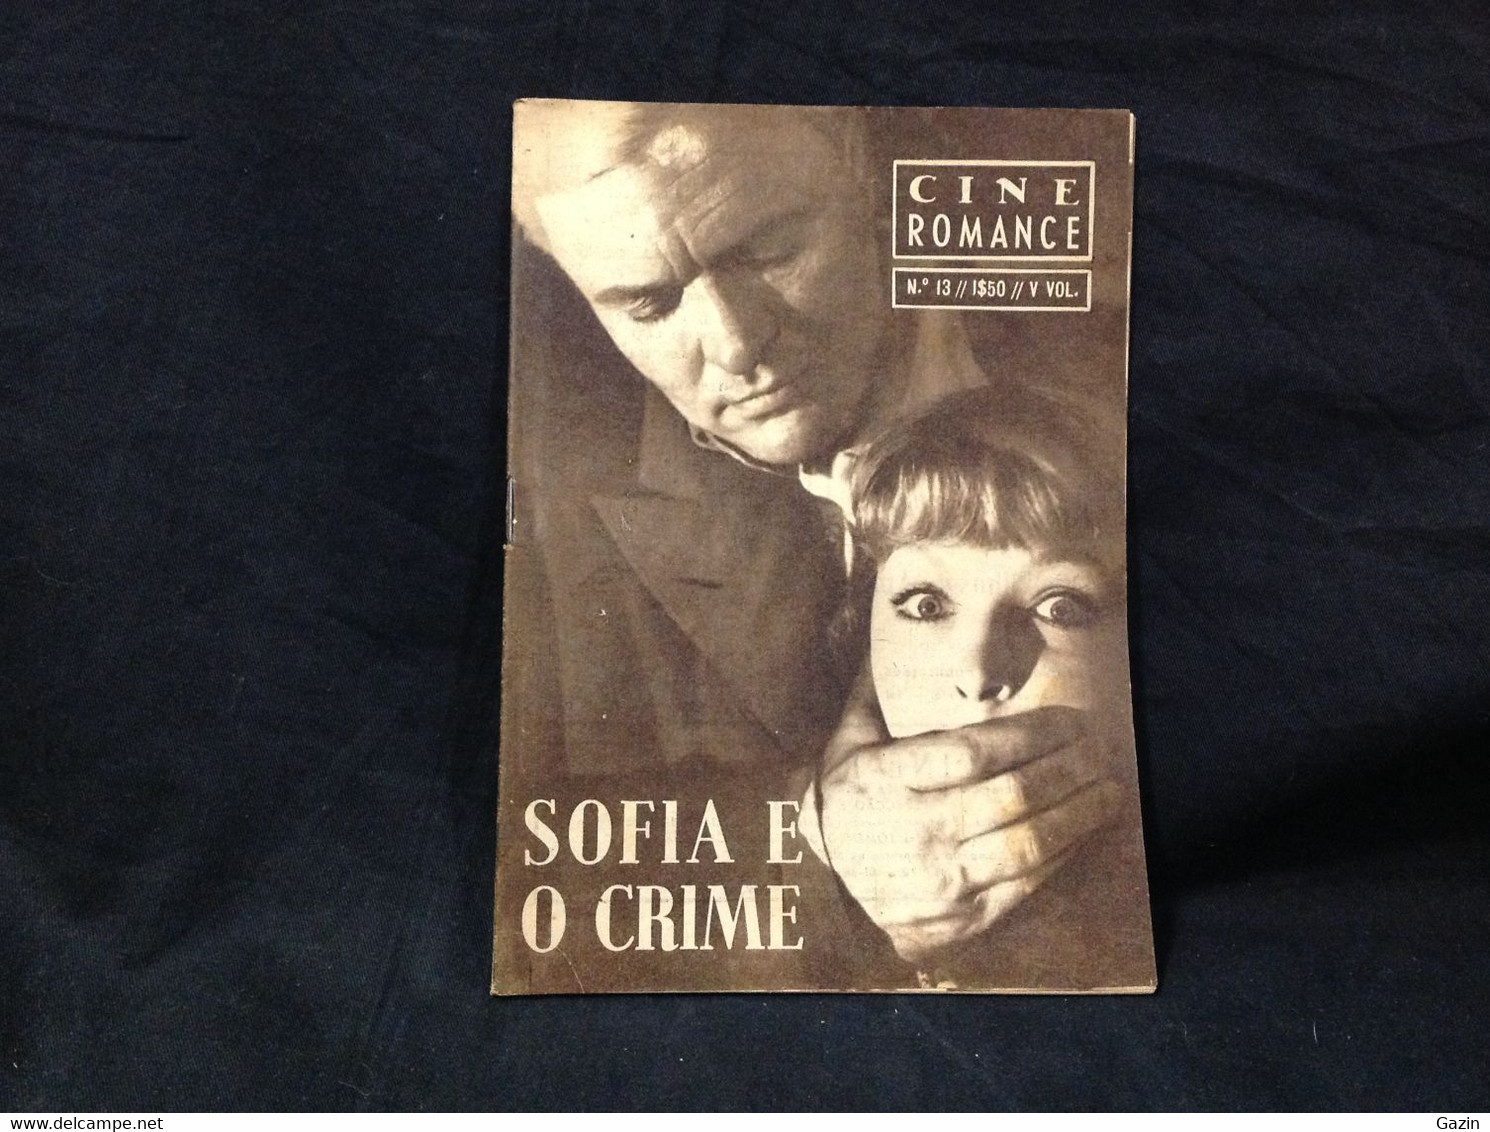 C2/23 - Sofia E O Crime - Marina Vlady * Peter Janeick -  Portugal Mag - Cine Romance -1956 - Eugénio Salvador - Cinema & Television